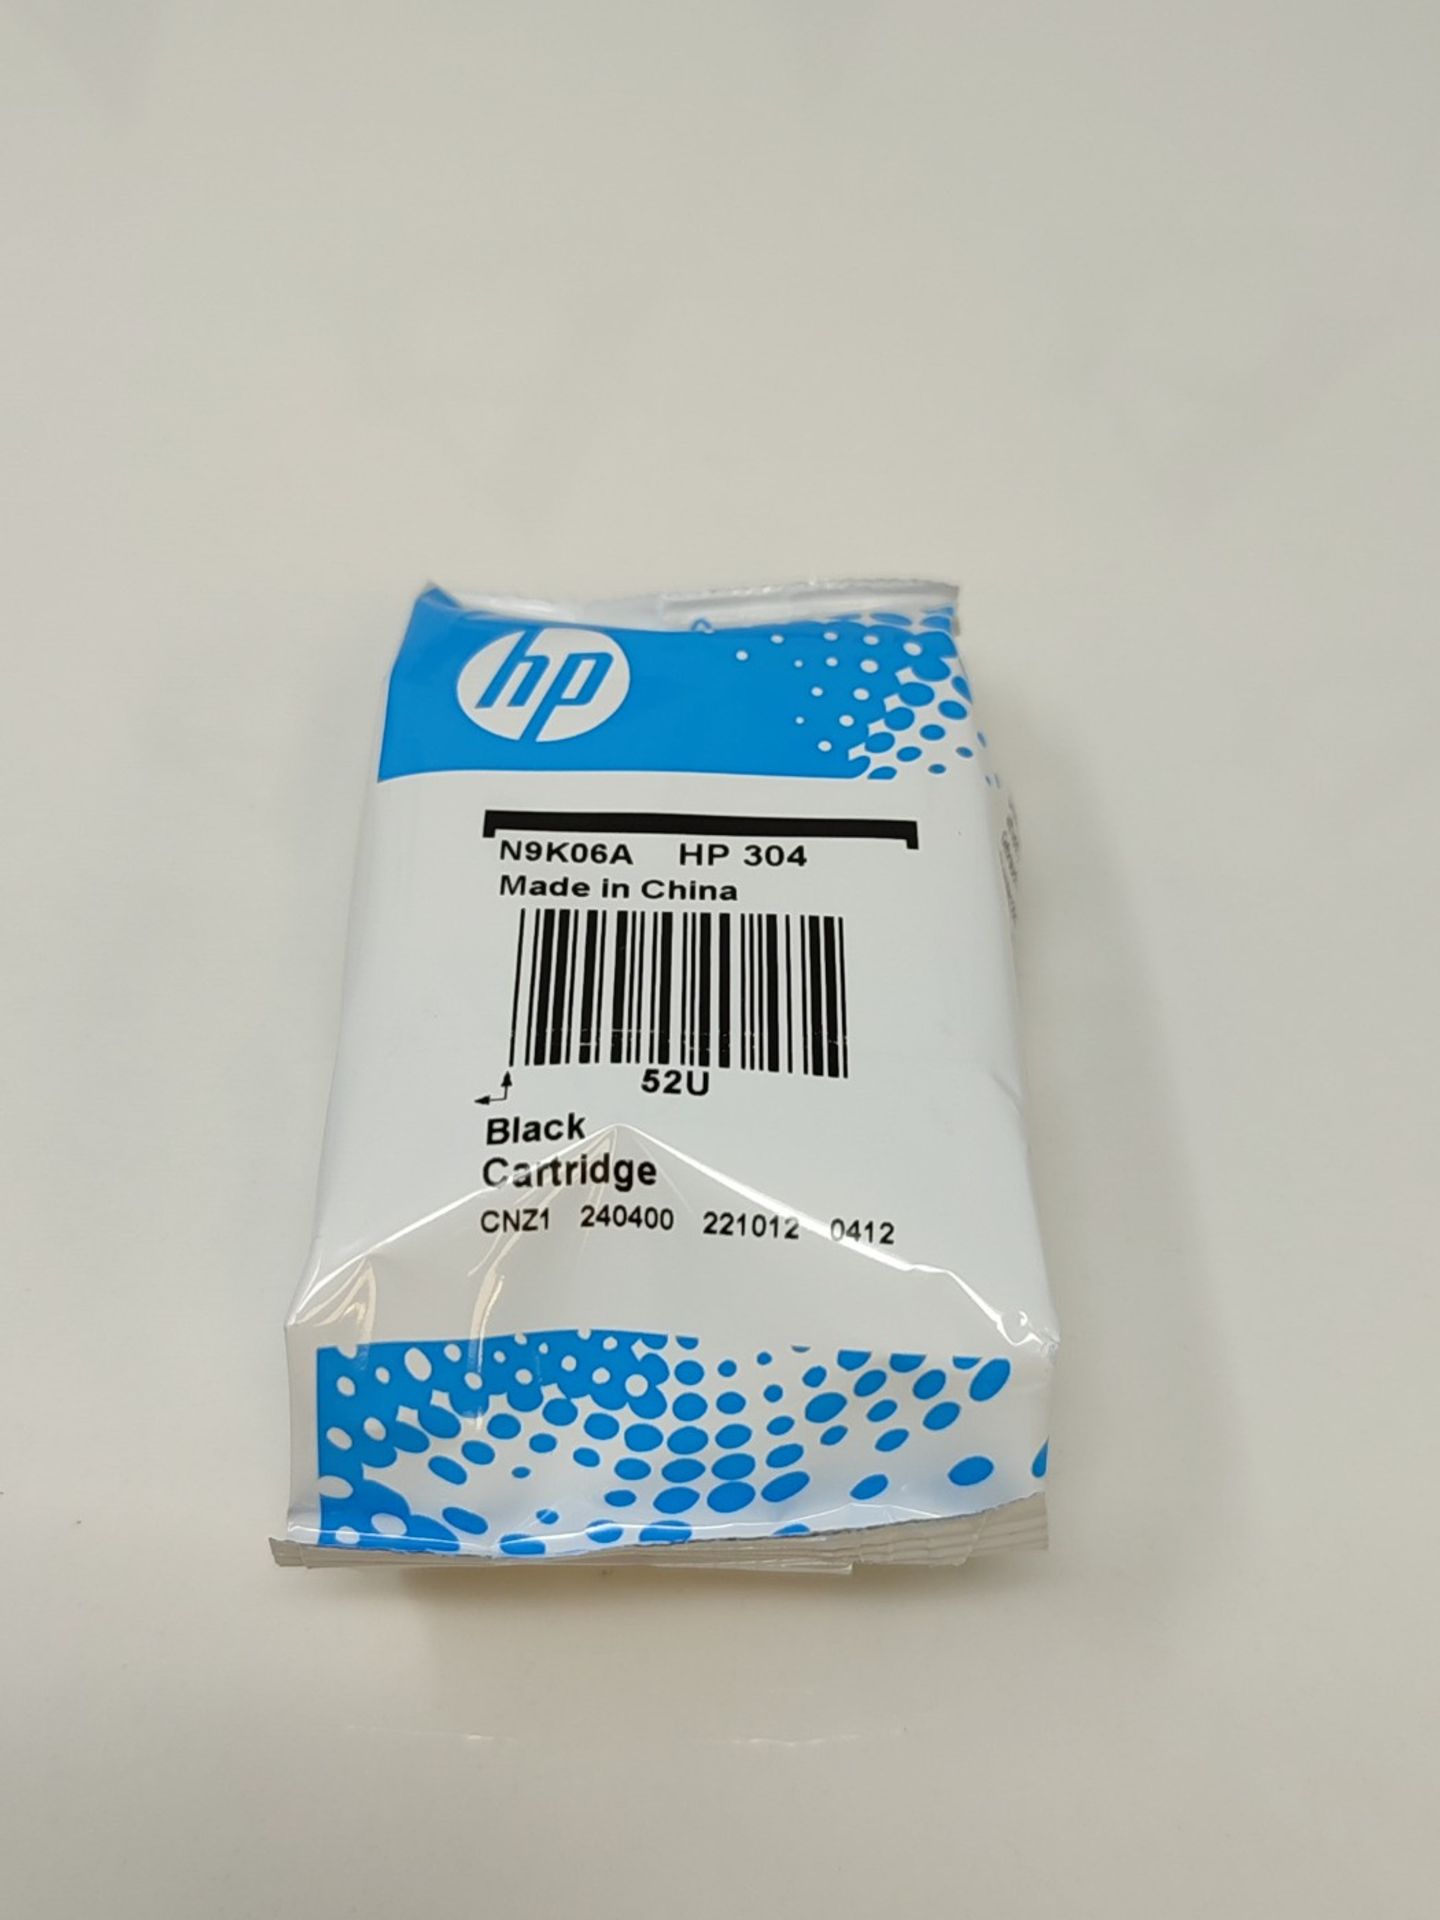 HP N9K06AE 304 Original Ink Cartridge, Black, (Pack of 1) - Image 2 of 2